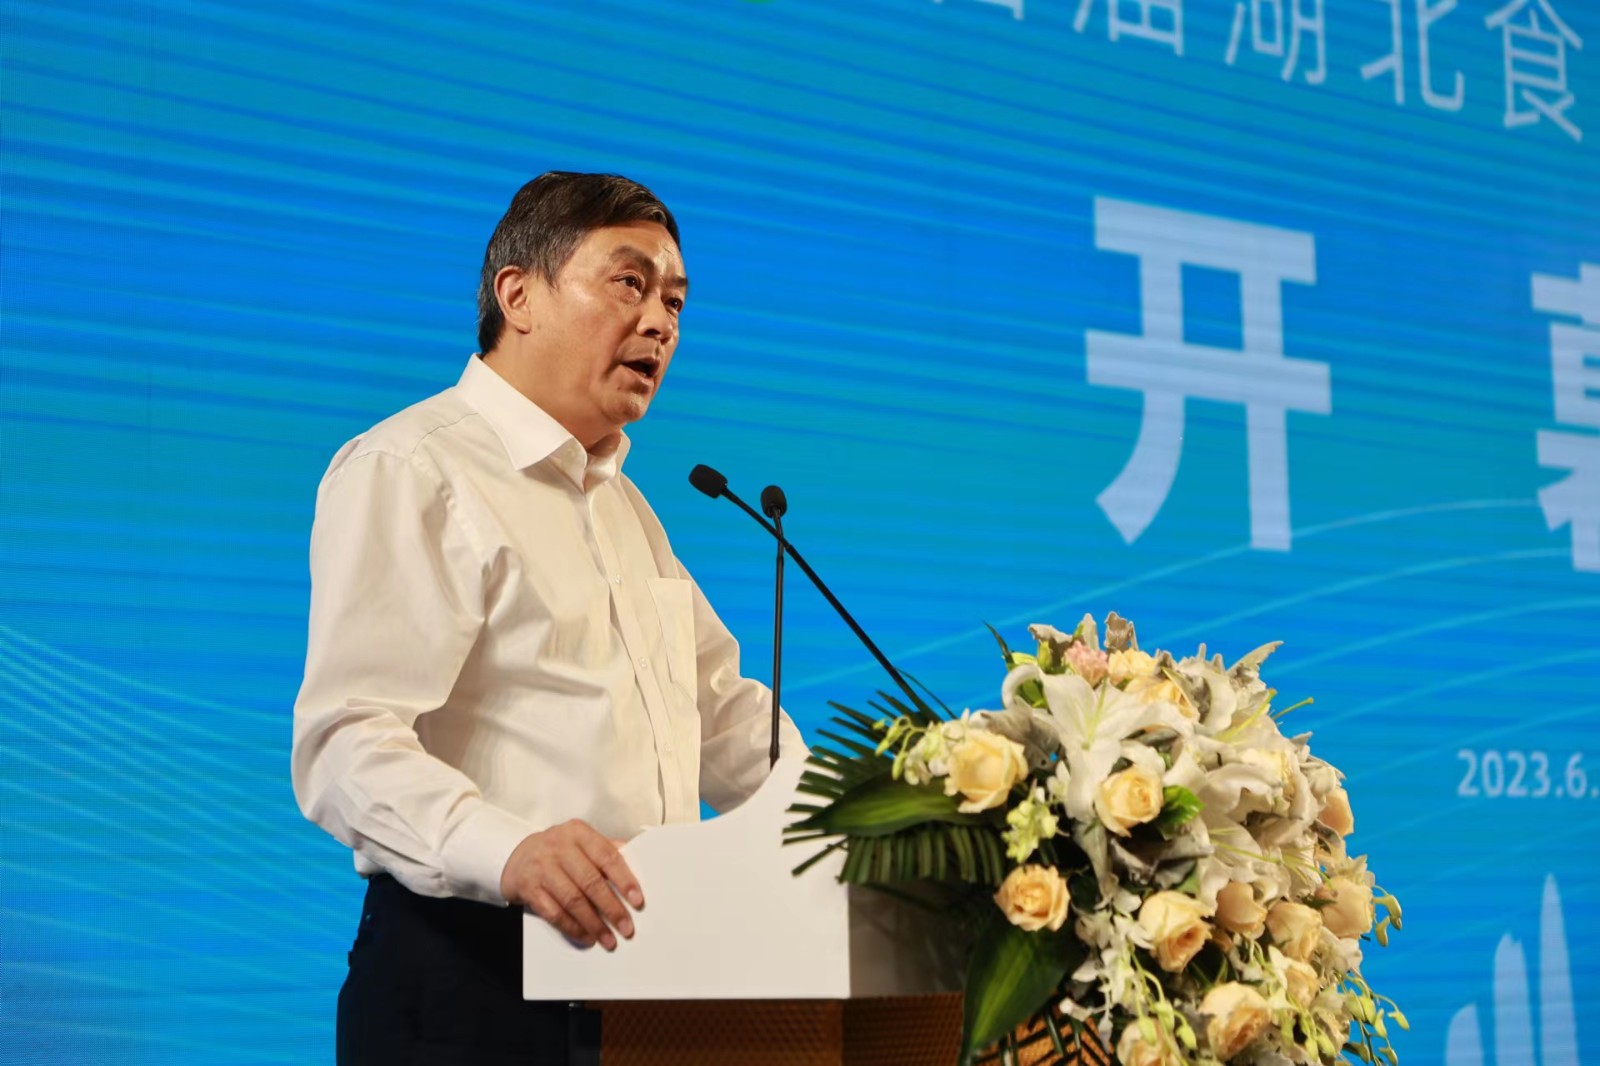 傅龙成副会长出席2023中国食品博览会暨食品工业“三品”成果展并致辞